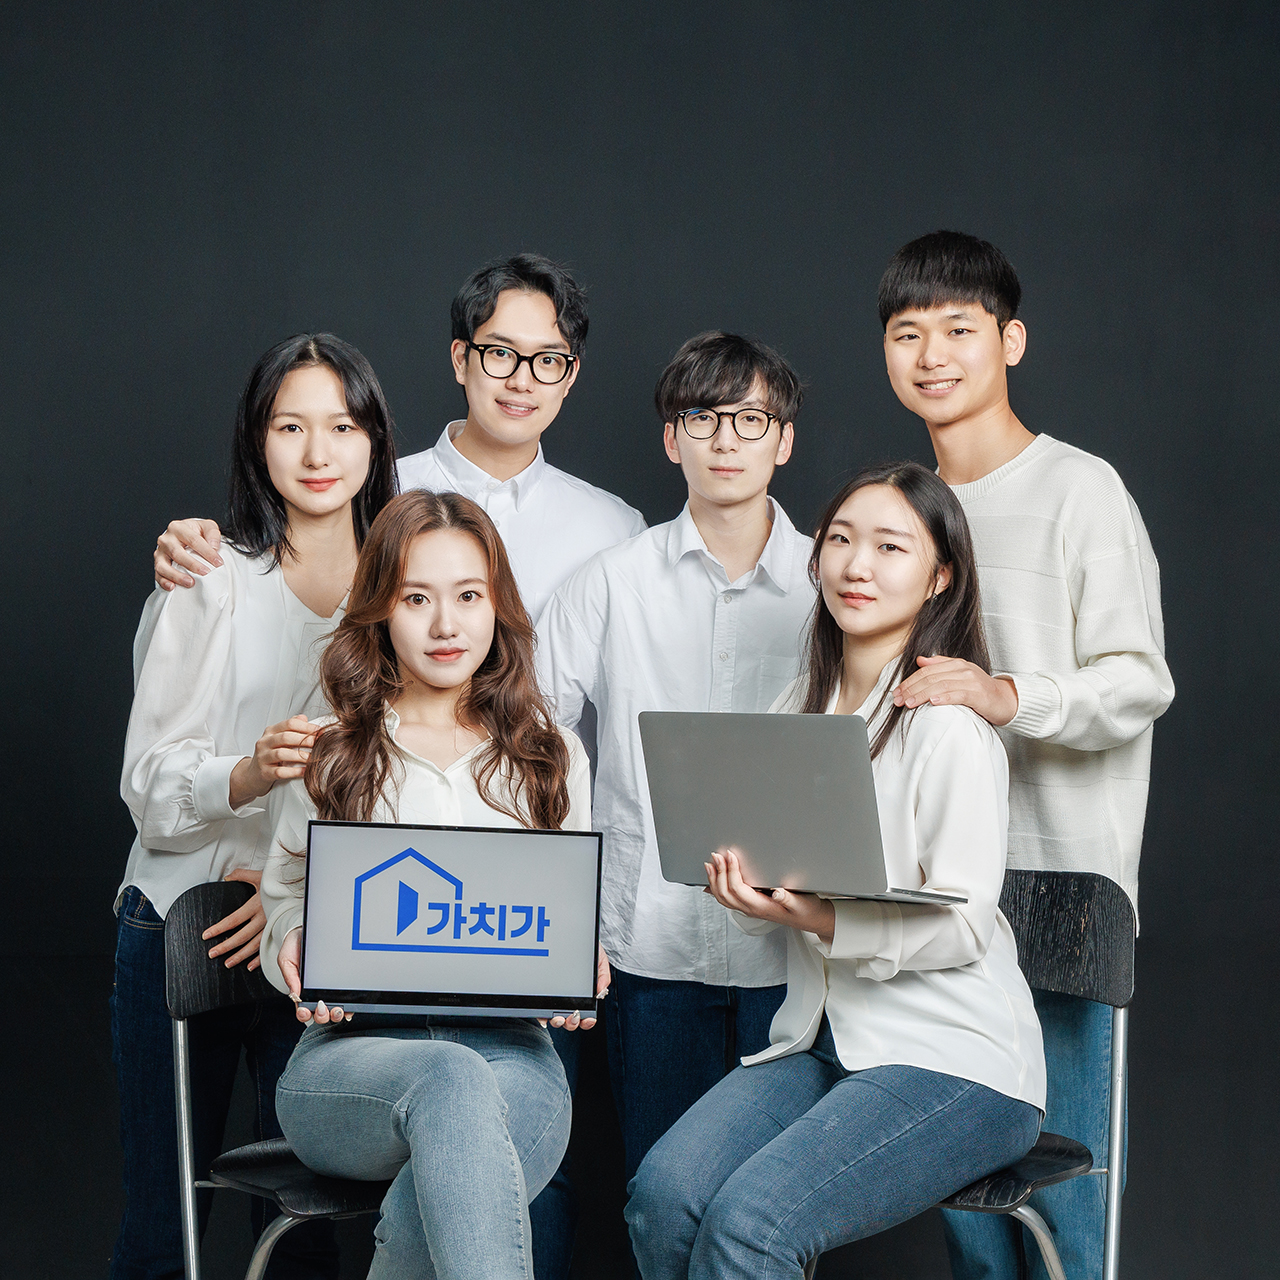 서울대학교 소셜 벤처 가치가는 청년들과 경력단절여성의 문제를 함께 엮어 해결책을 마련했다.[사진=천막사진관]